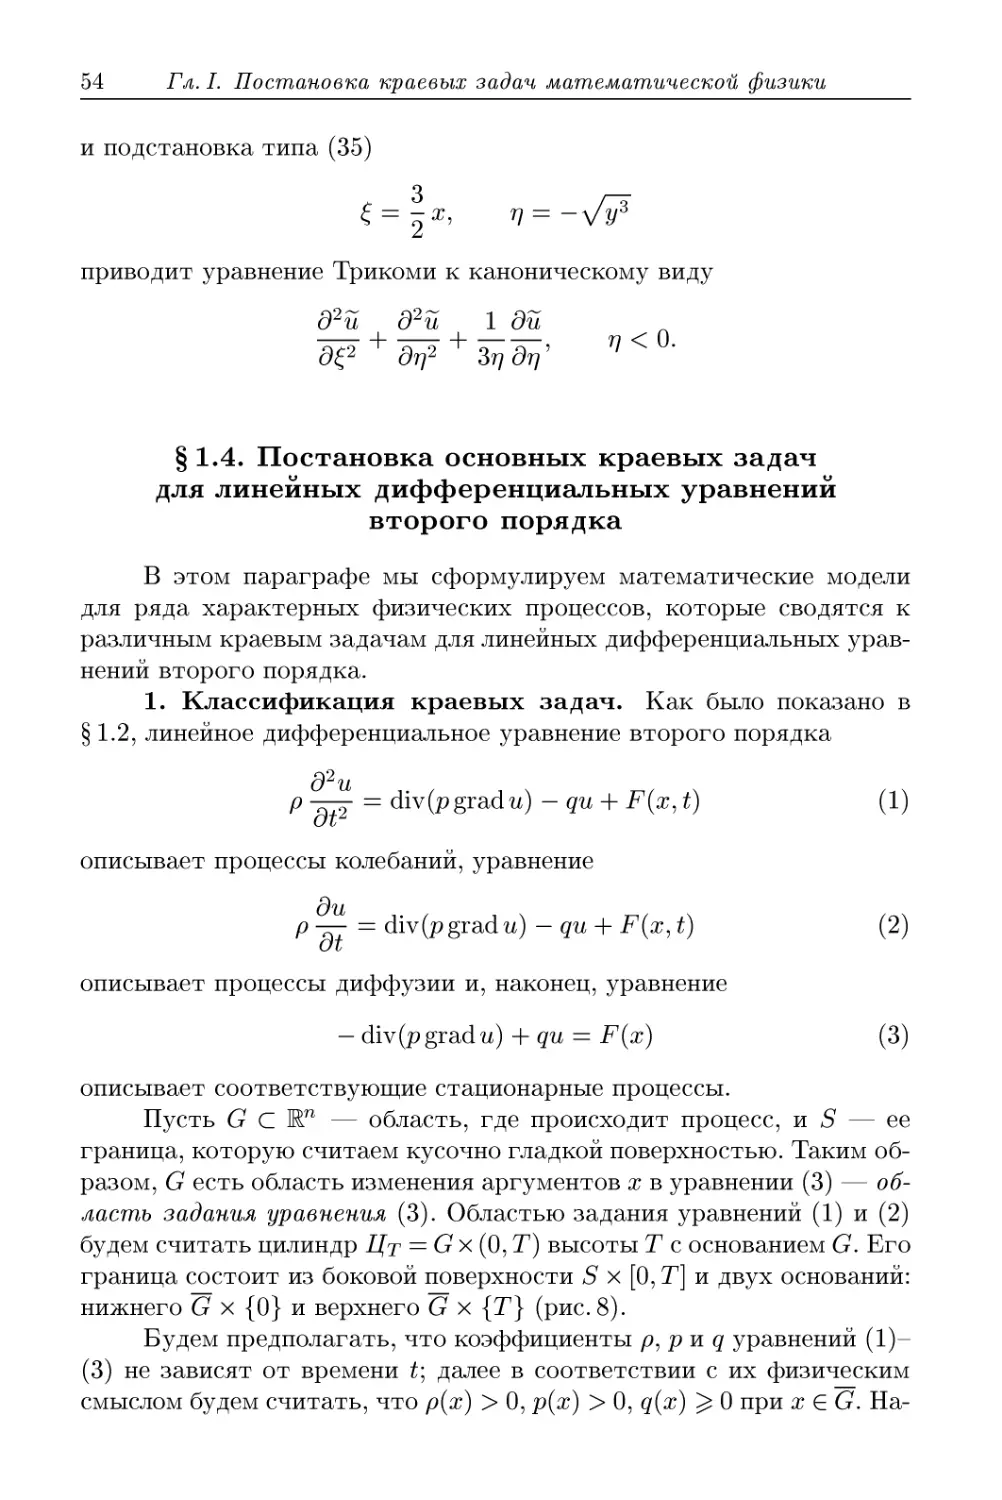 § 1.4. Постановка основных краевых задач для линейных дифференциальных уравнений второго порядка